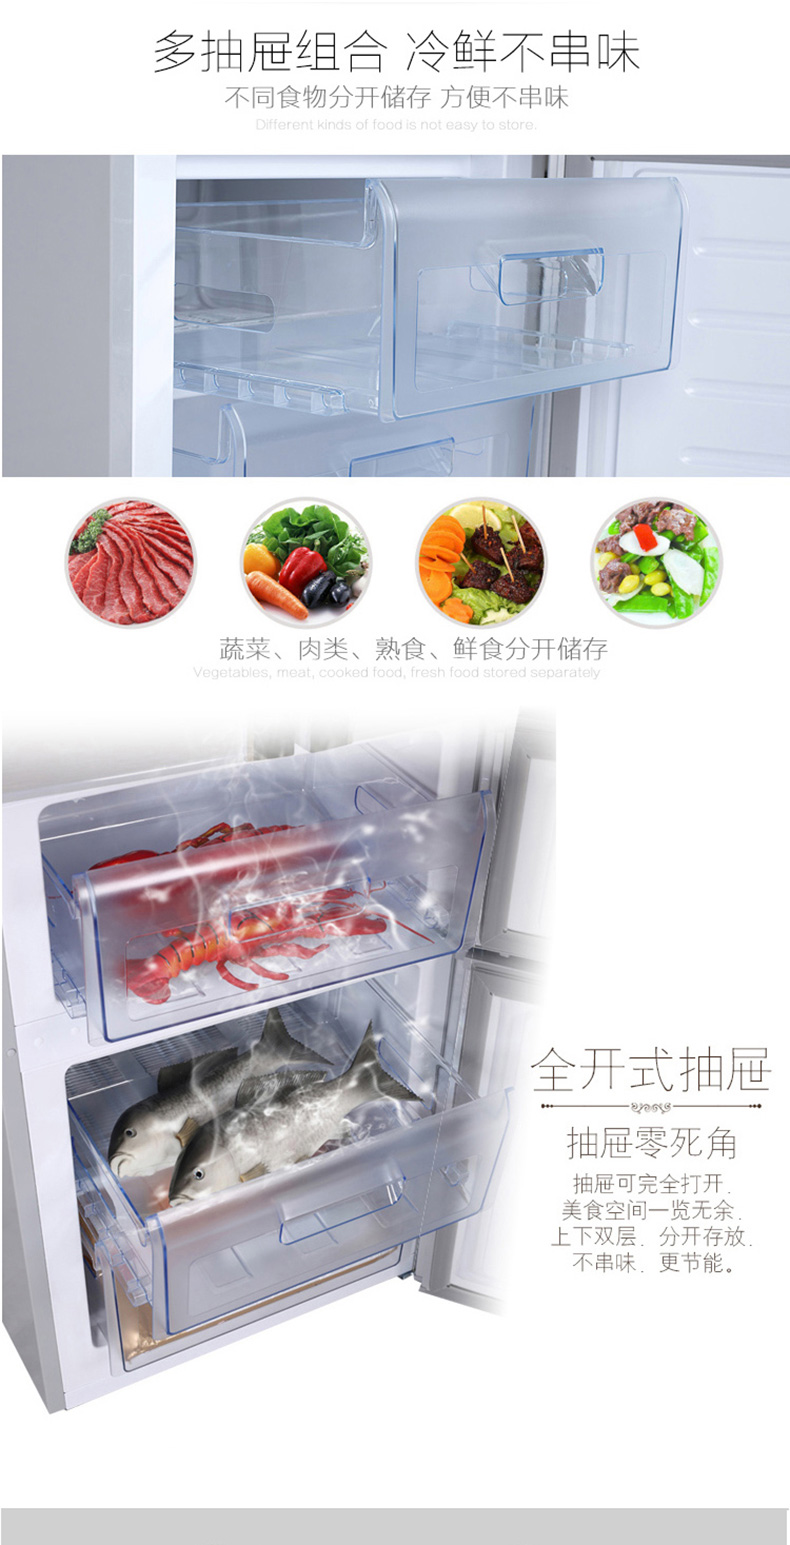 康佳冰箱BCD-288GY4S